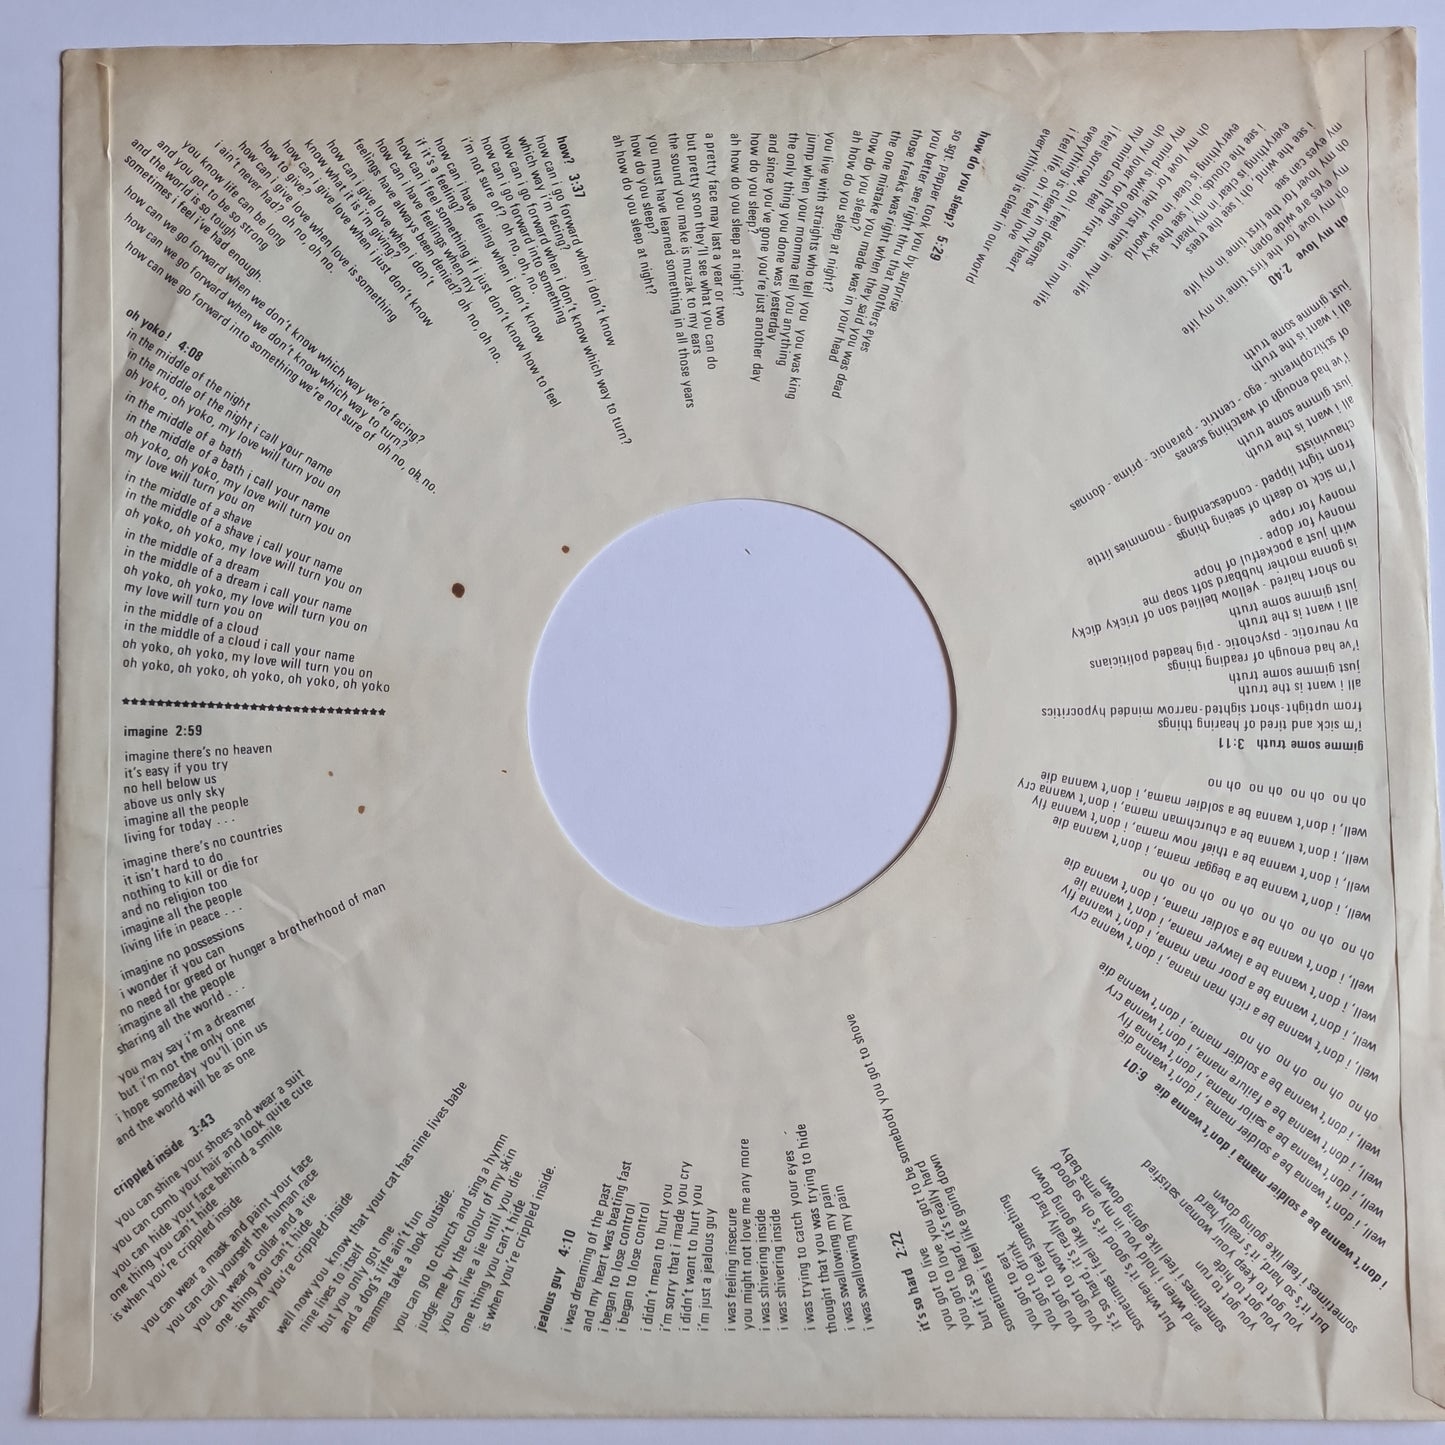 John Lennon (Beatles) – Imagine - 1971 (Japanese Pressing) - Vinyl Record